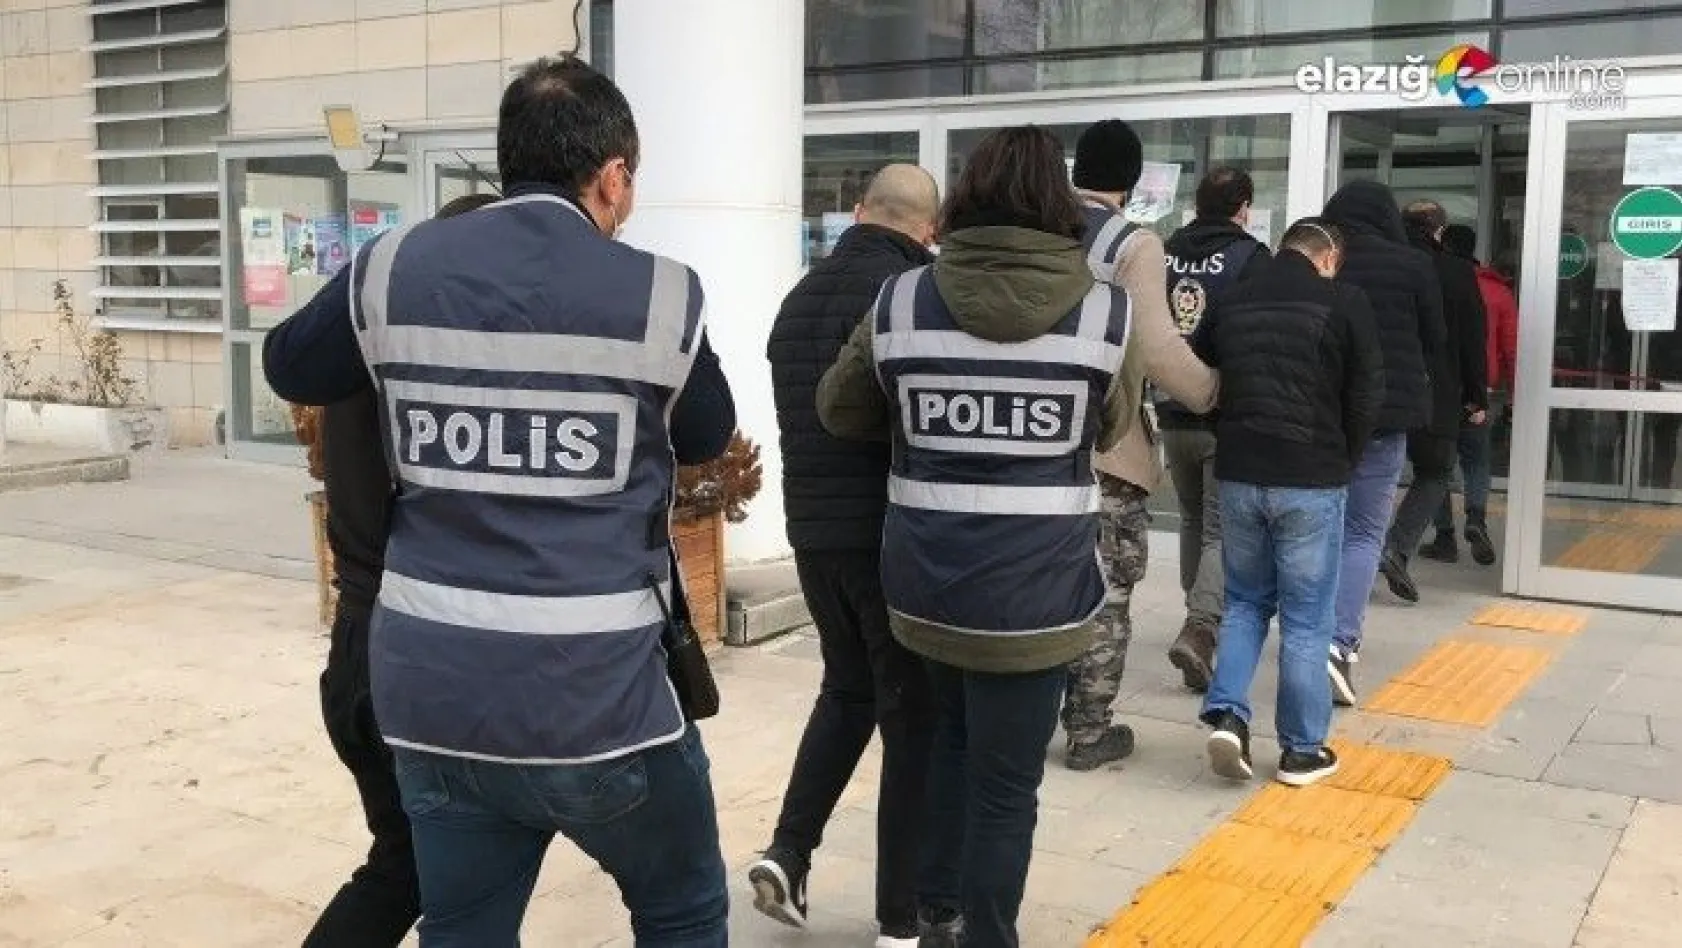 Elazığ'da hırsızlık şüphelisi 4 şahıs tutuklandı